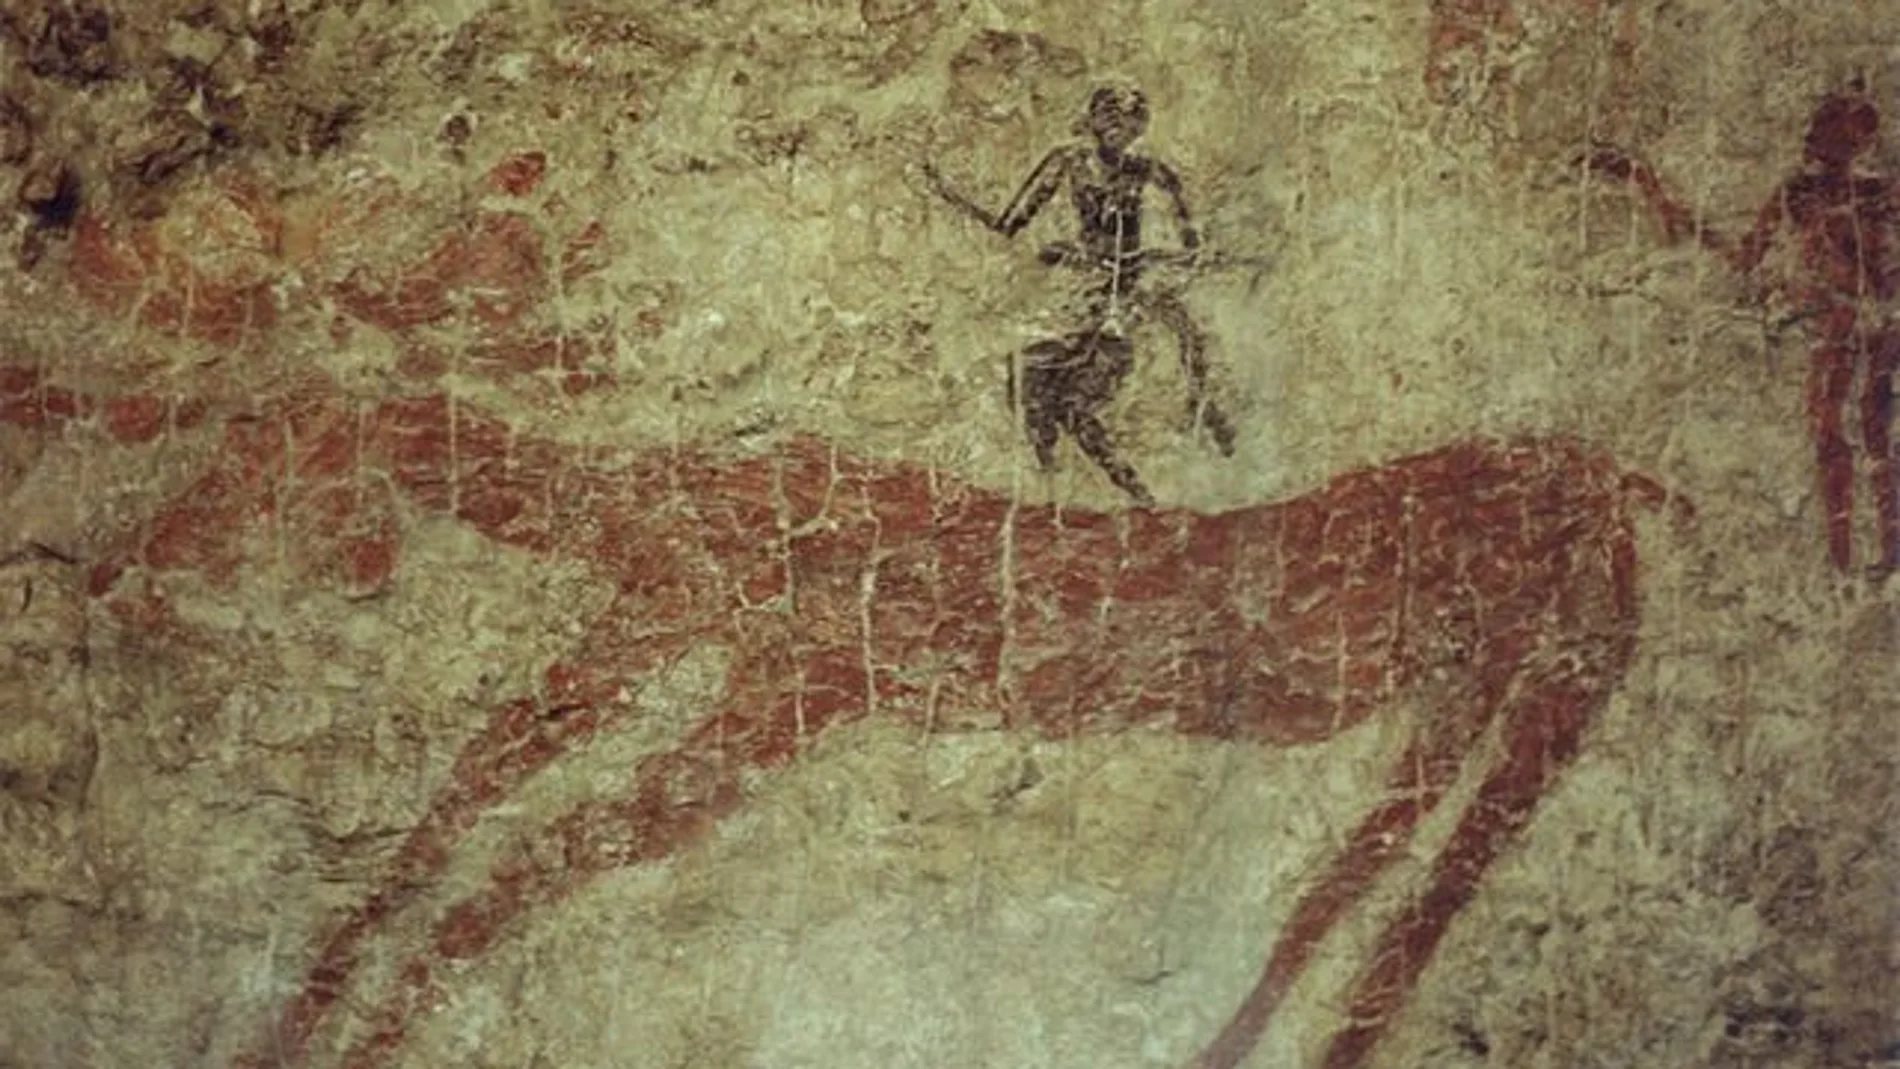 Caza de un ciervo. Pintura mural, VI milenio a.C. Museo de Civilizaciones de Anatolia, Ankara.